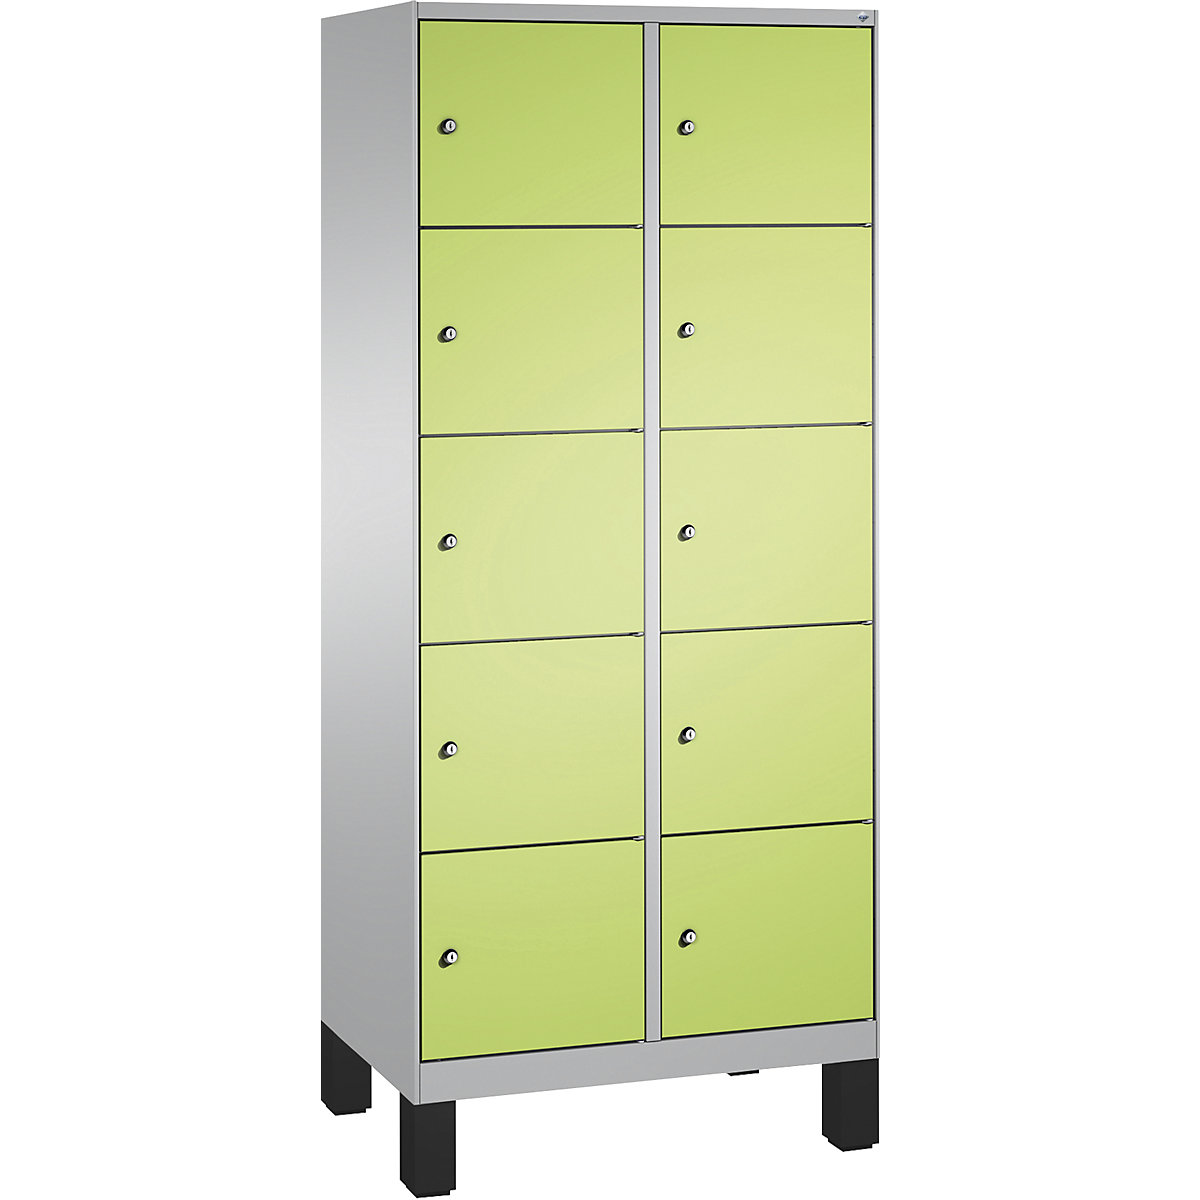 Armoire à casiers sur pieds EVOLO – C+P, 2 compartiments, 5 casiers chacun, largeur compartiments 400 mm, aluminium / vert-8